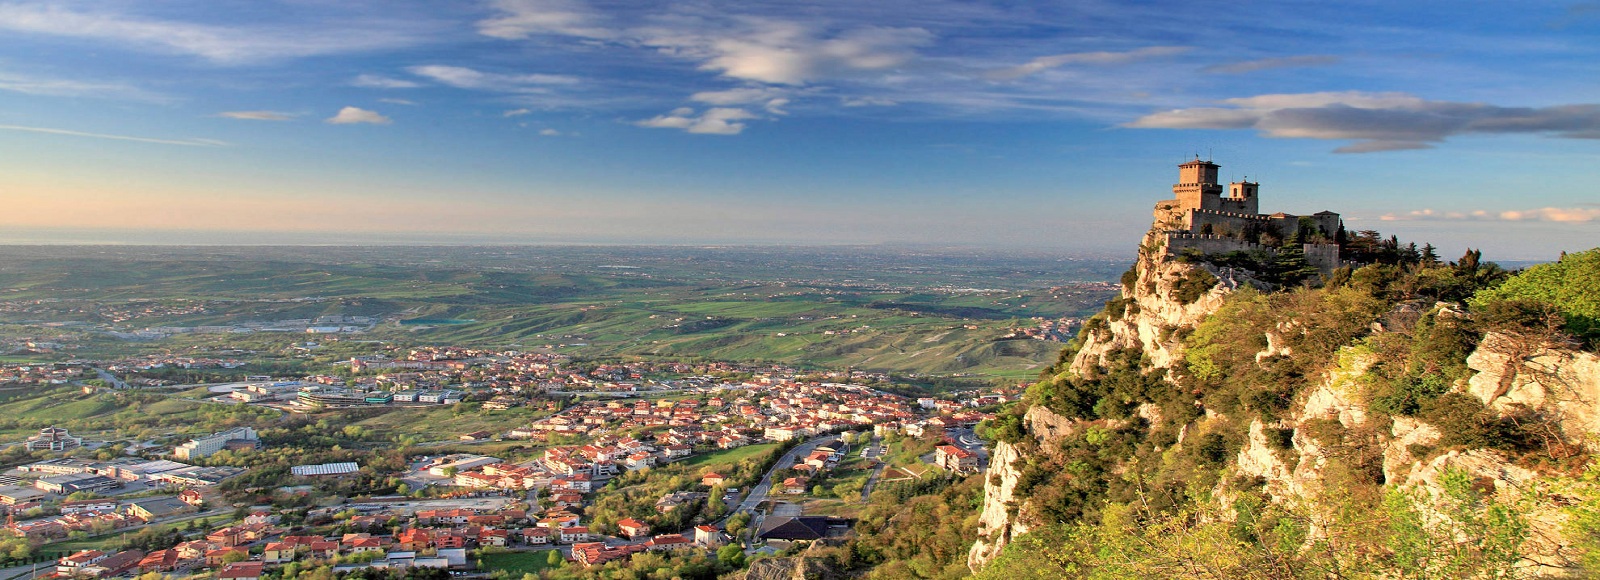 Ofertas de Traslados en San Marino. Traslados económicos en San Marino 